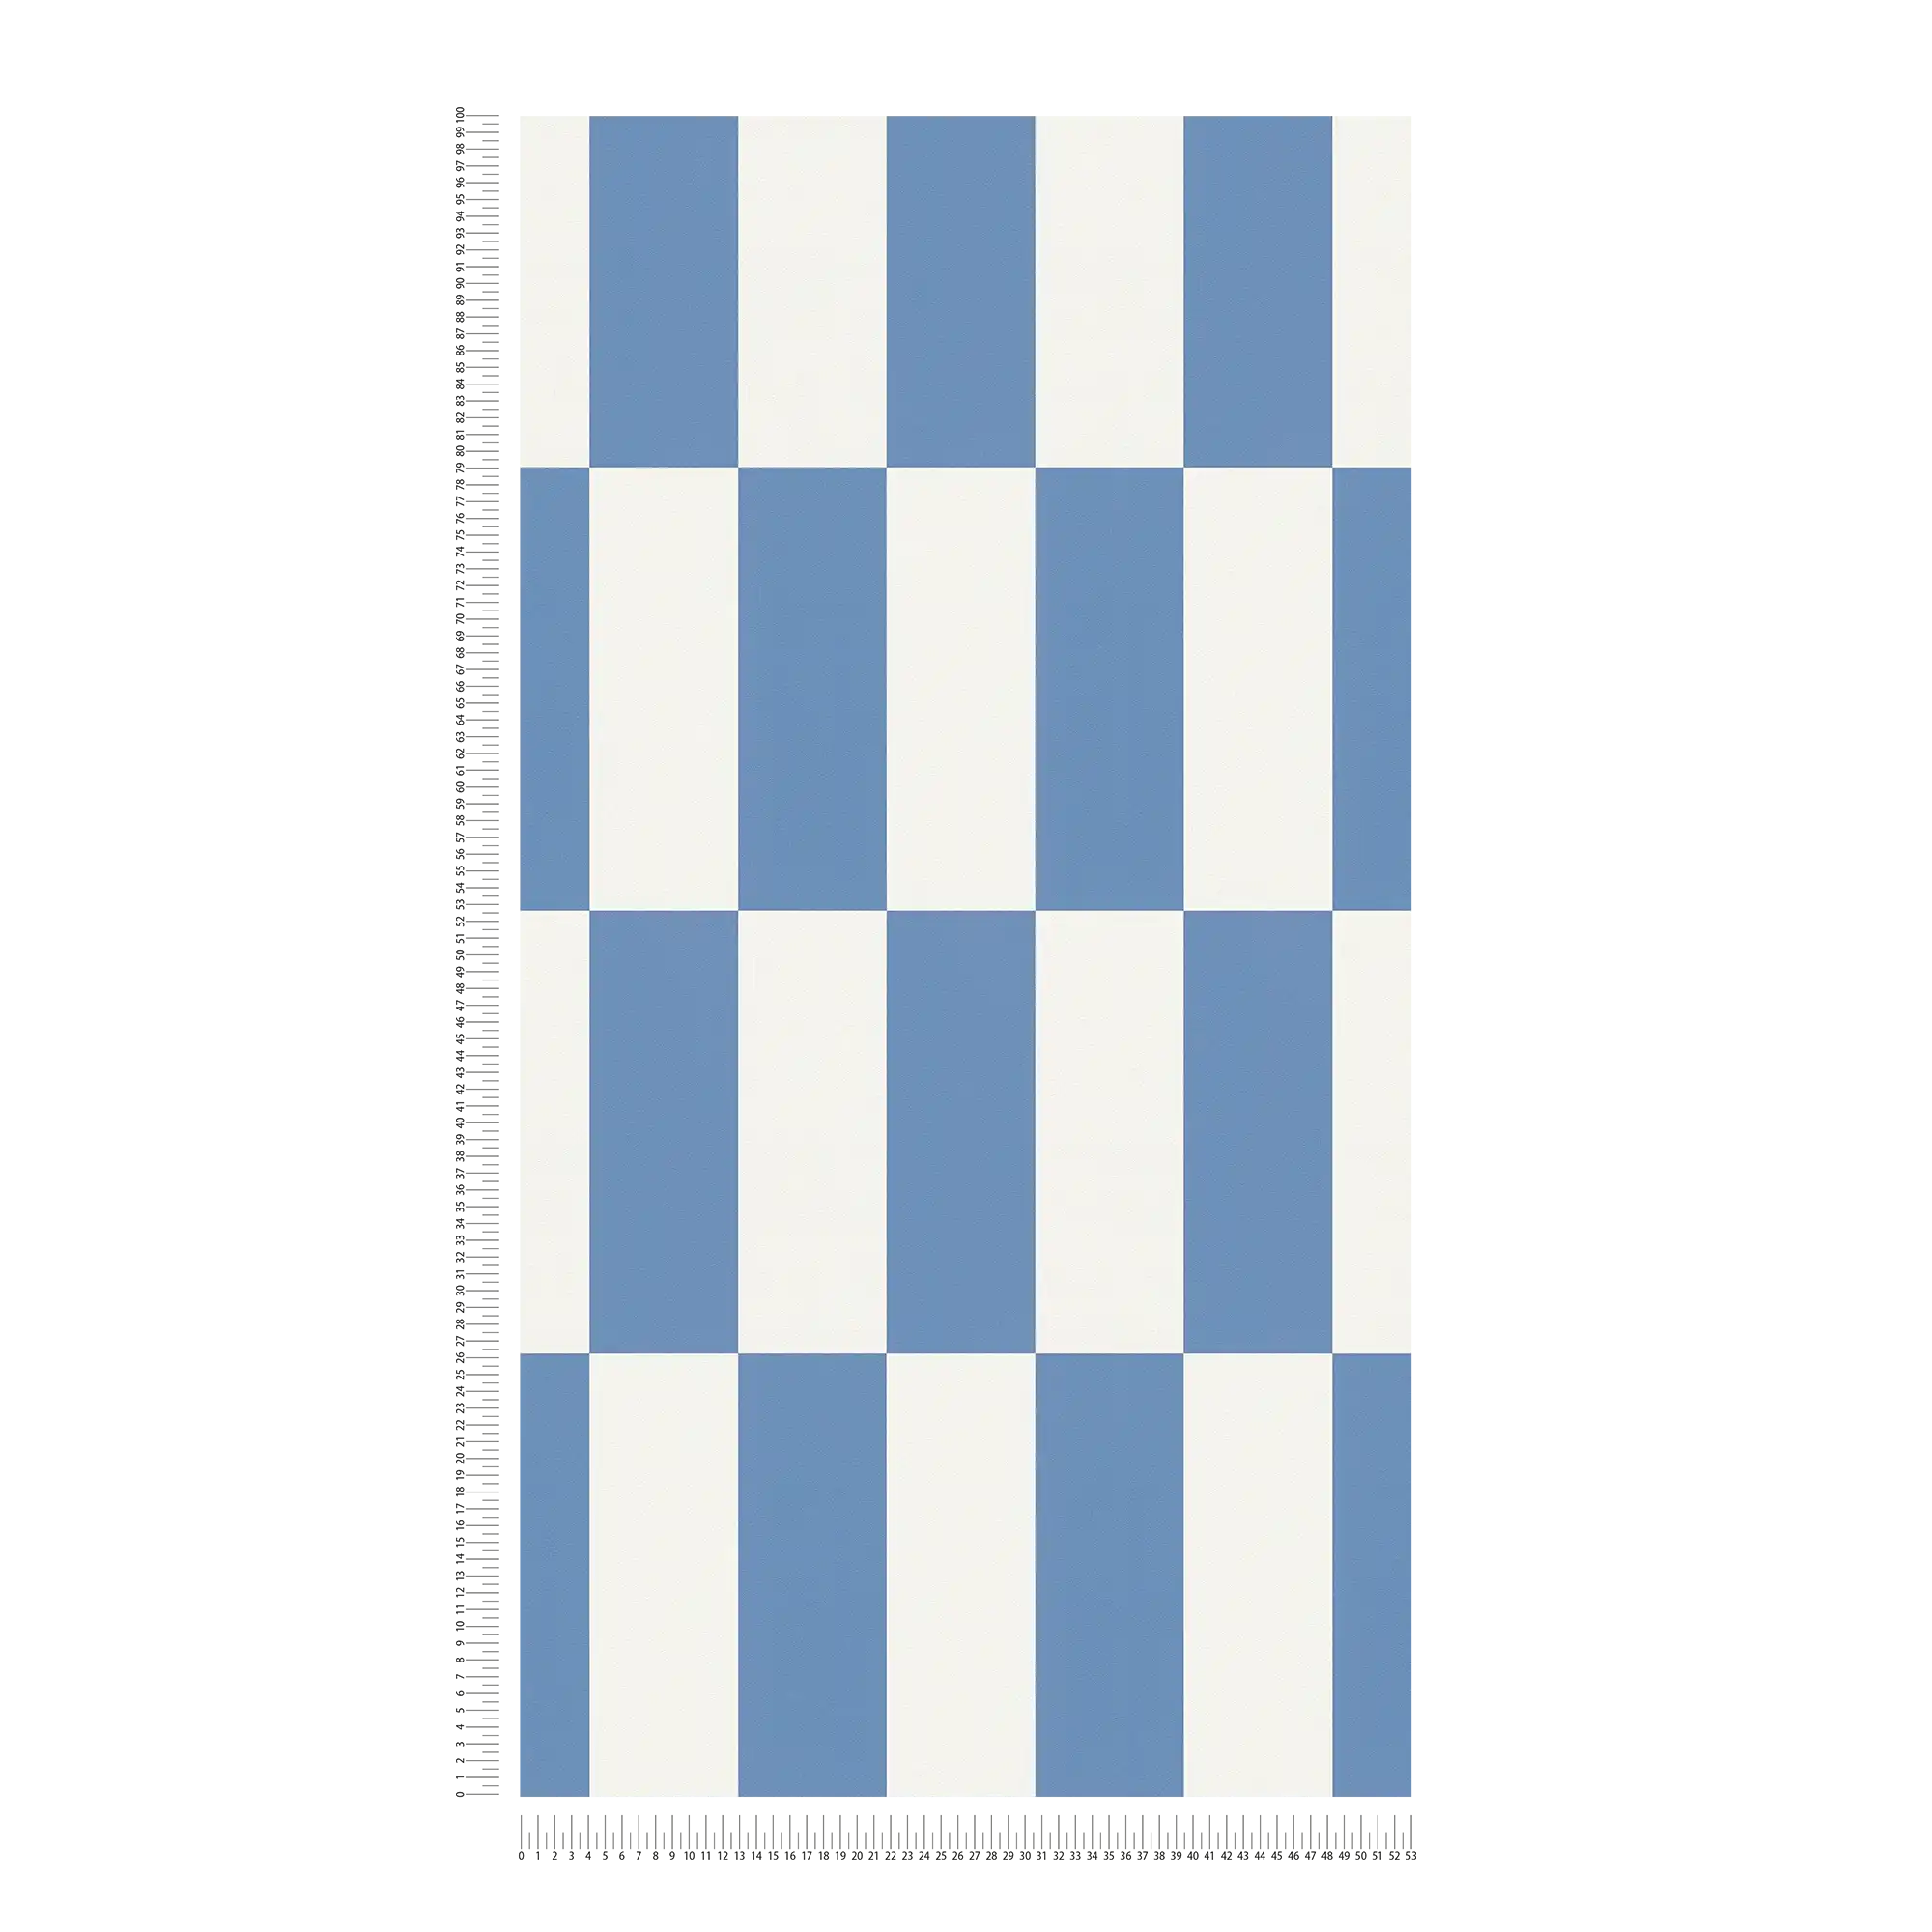             Carta da parati in tessuto non tessuto con motivo grafico a quadri - blu, bianco
        